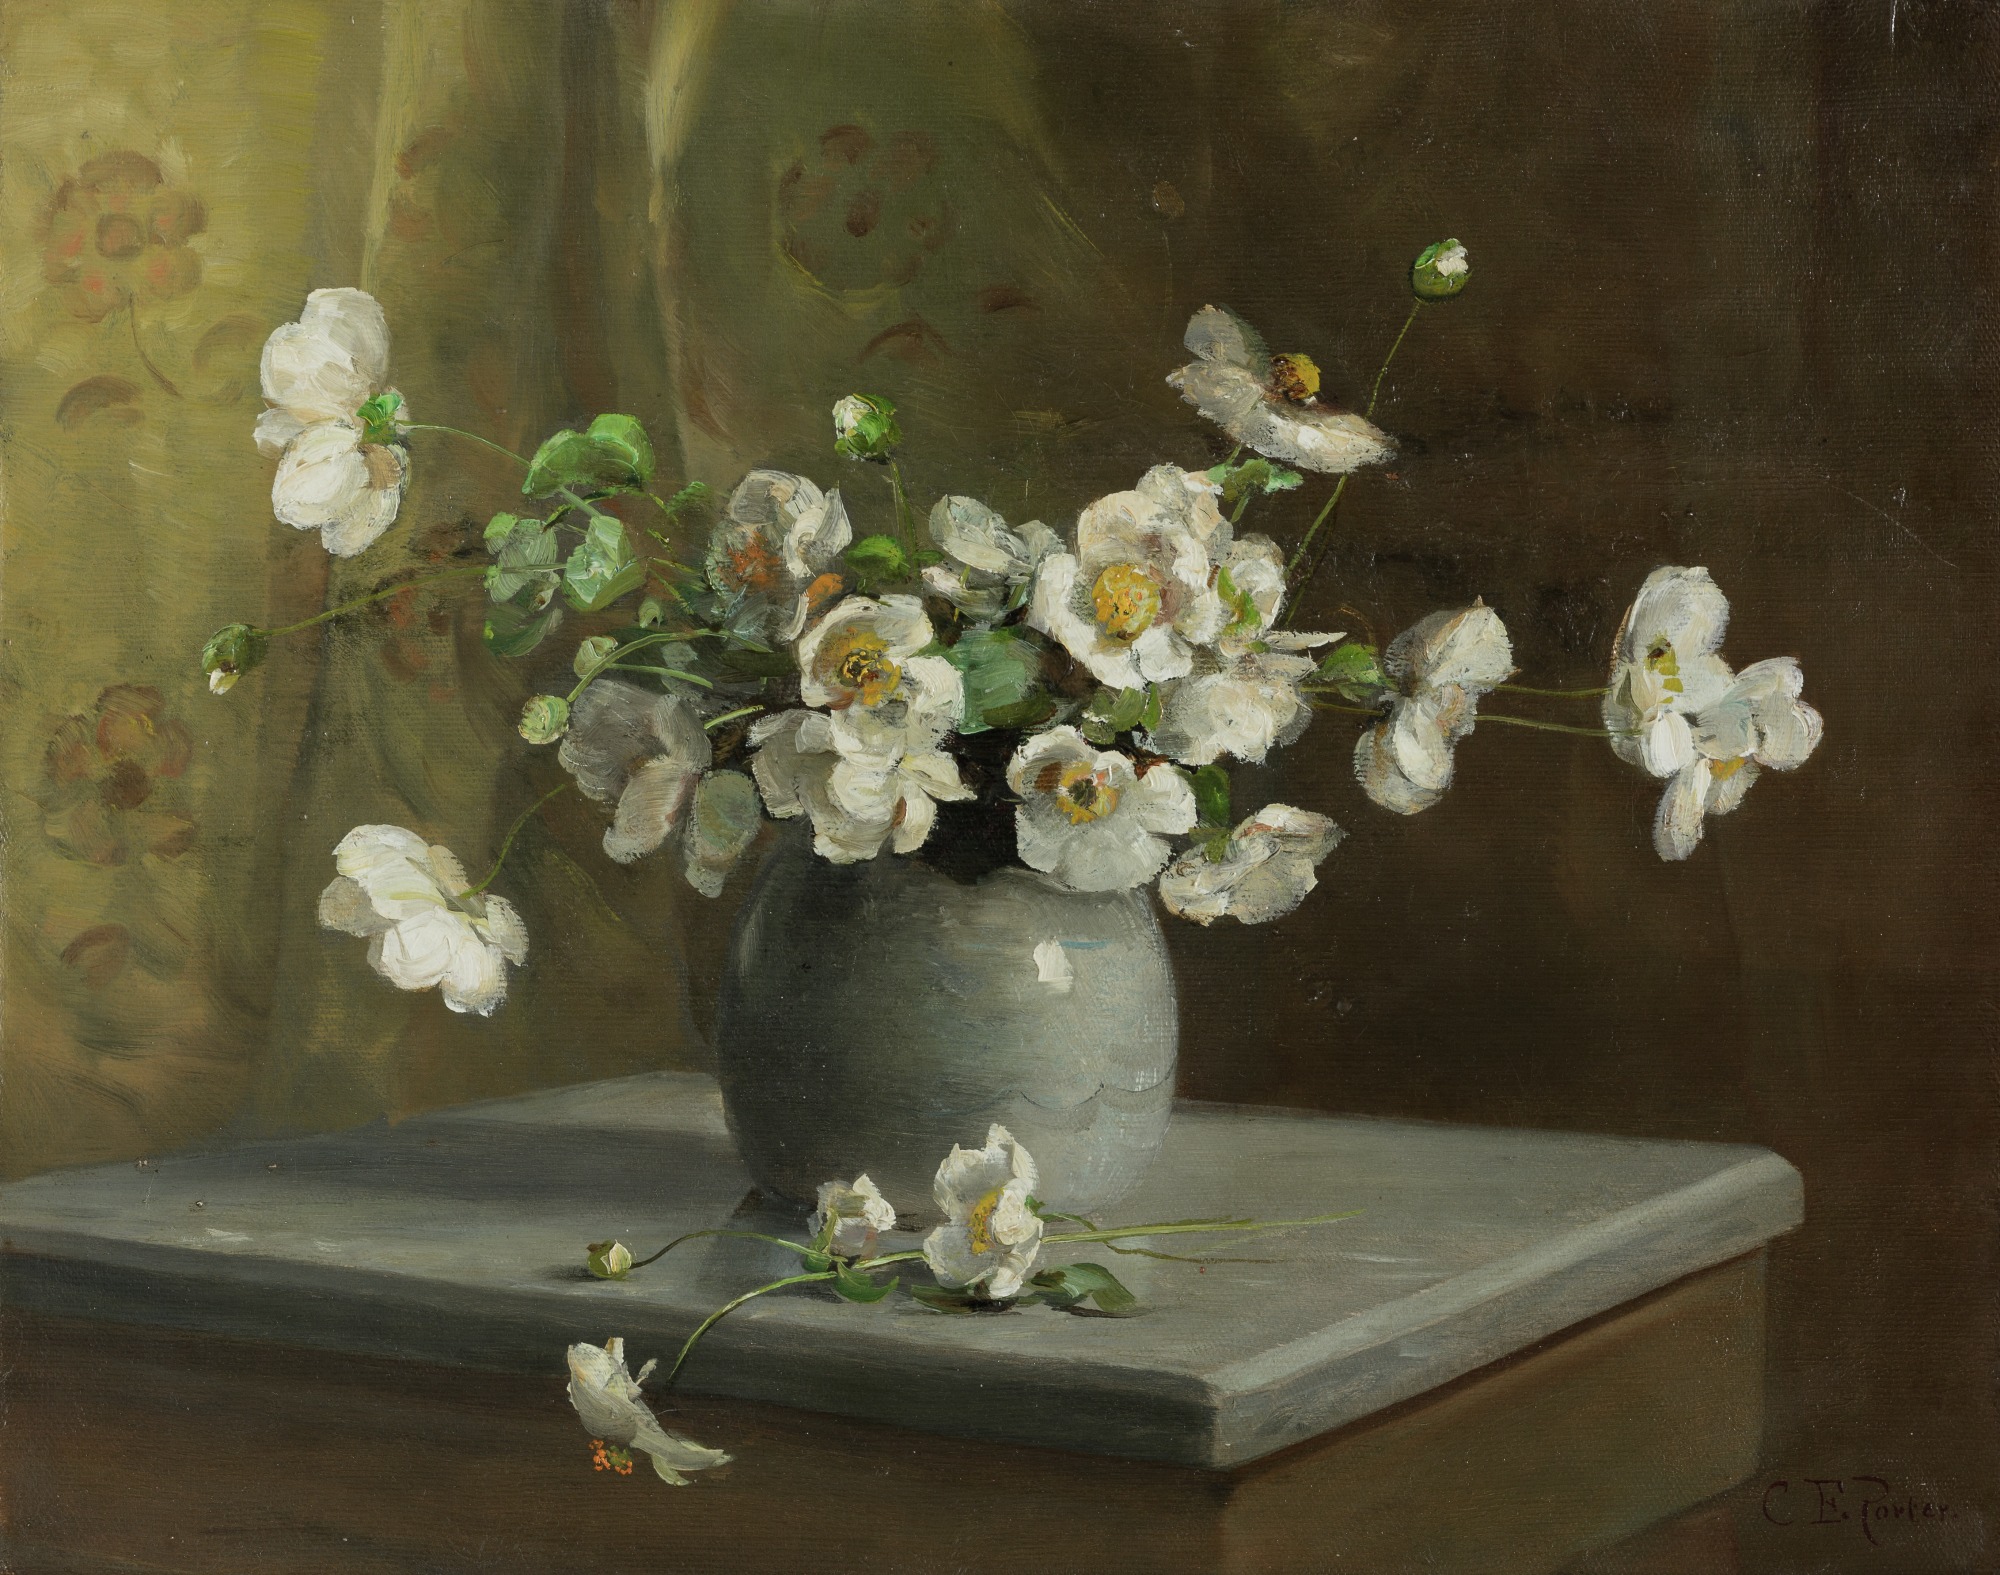 Natură moartă florală by Charles Ethan Porter - între 1880 și 1890 - 41 × 51,8 cm 